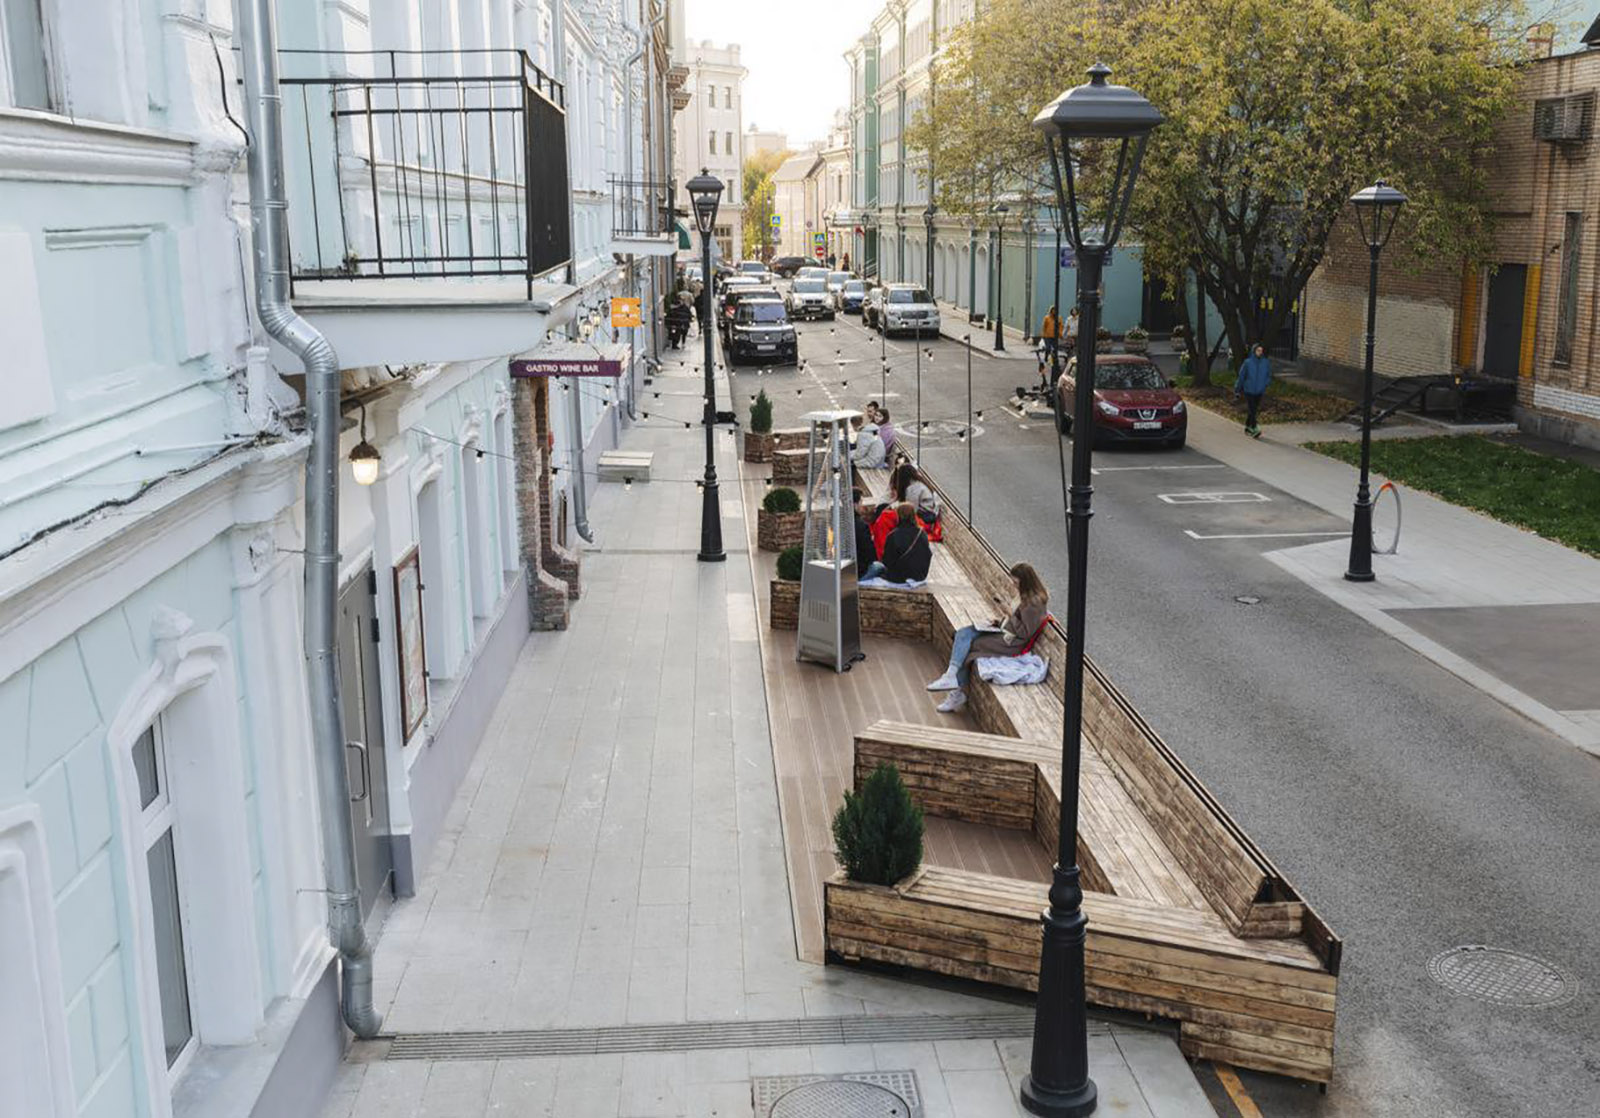 Разместить парклеты можно только на улицах без двустороннего движения транспорта, на нешироких улицах. Фото: сайт мэра Москвы